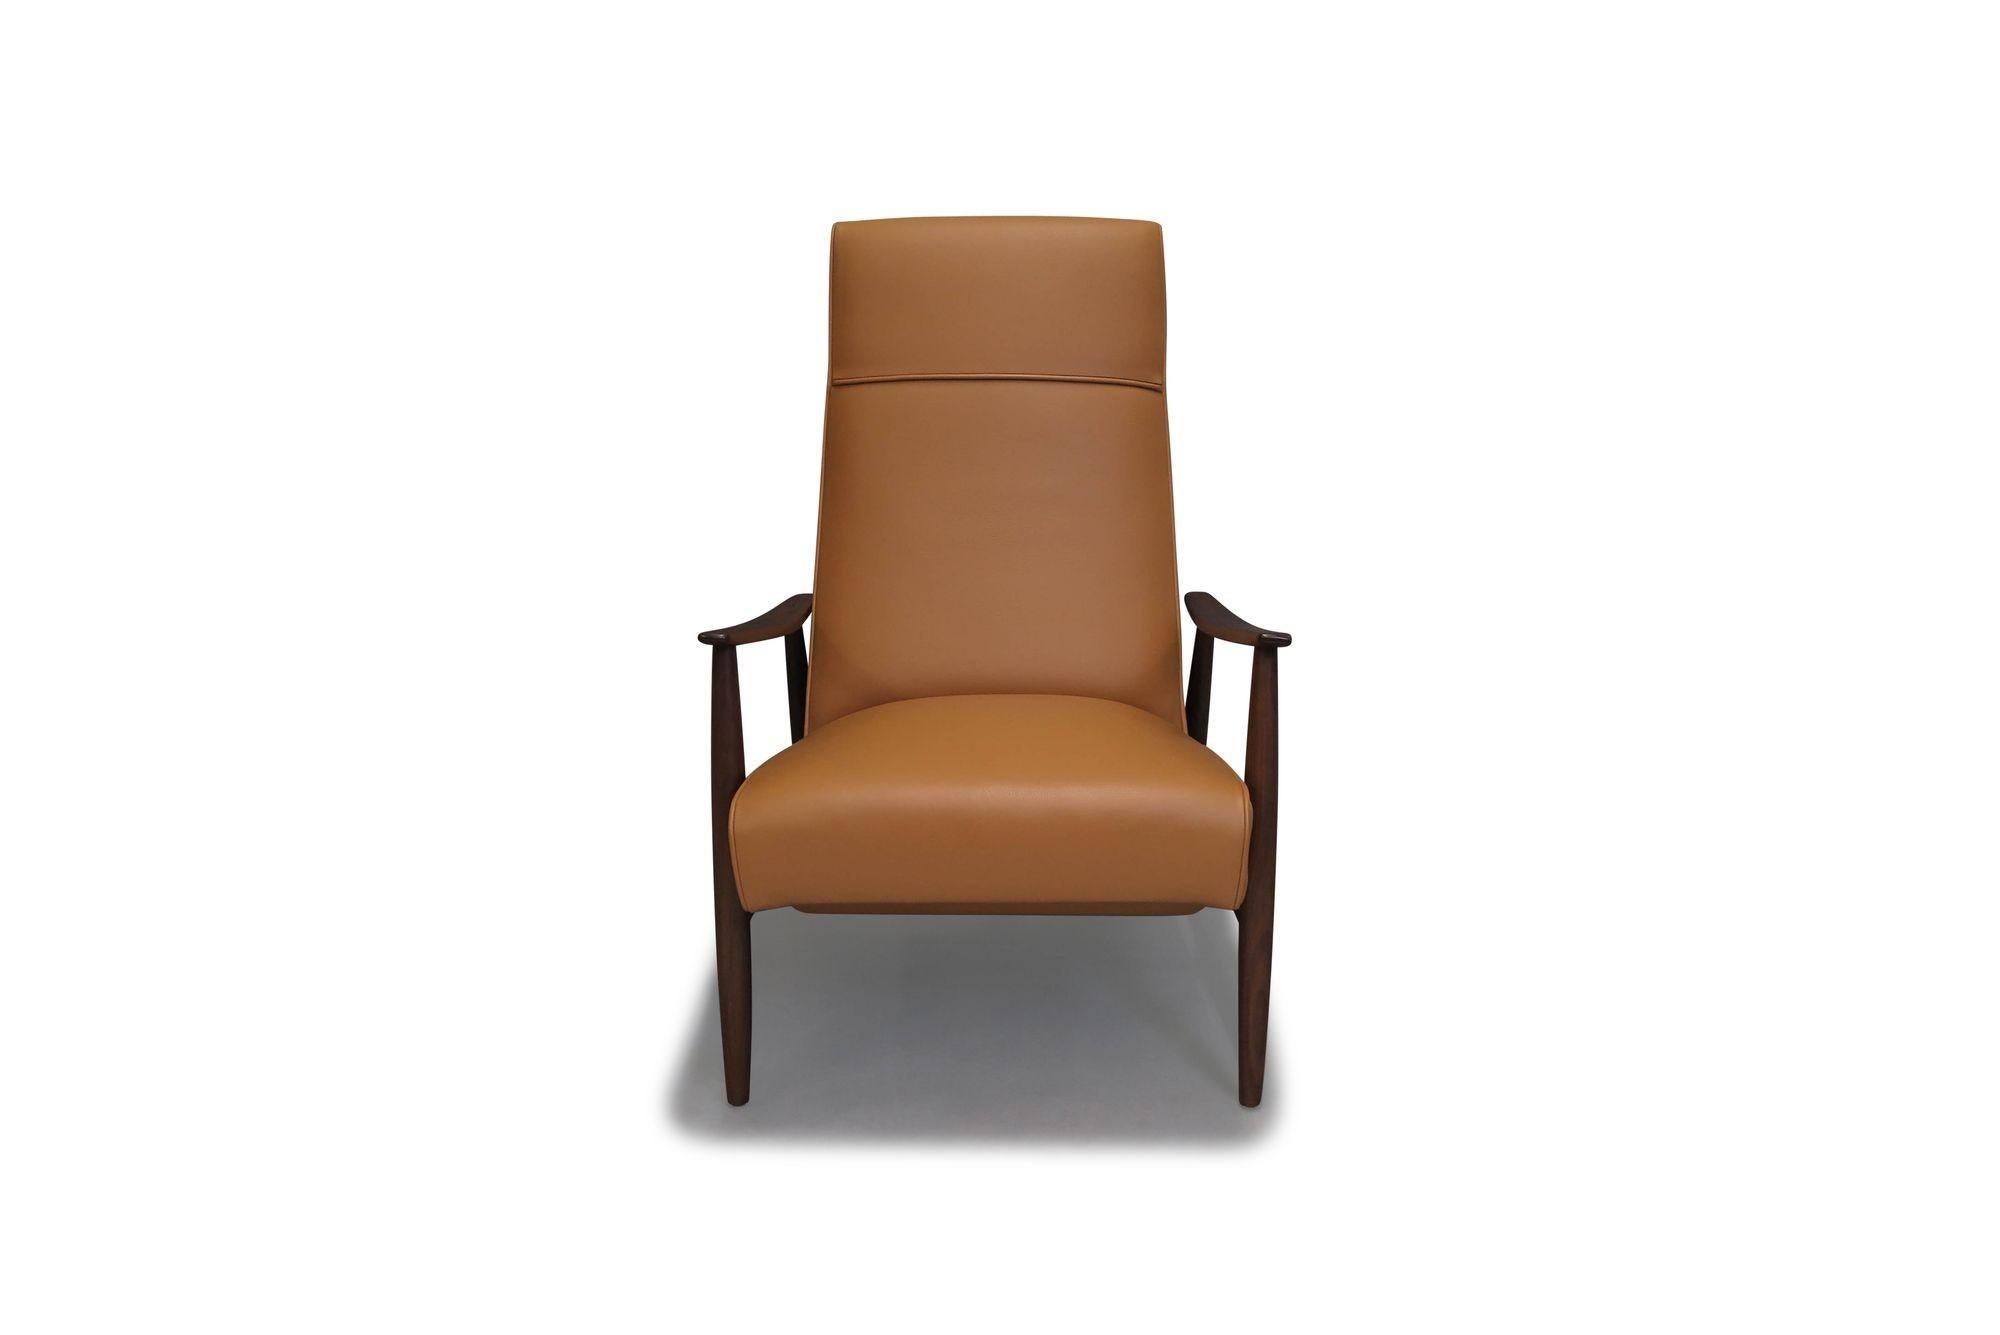 Ursprünglich 1965 von Milo Baughman entworfen, ist dieser kultige Mid-Century Modern Sessel ein zeitloser Loungesessel für alle Umgebungen. Auf einem massiven Gestell aus schwarzem Nussbaumholz mit schrägen Armlehnen bietet der Sessel einen leicht